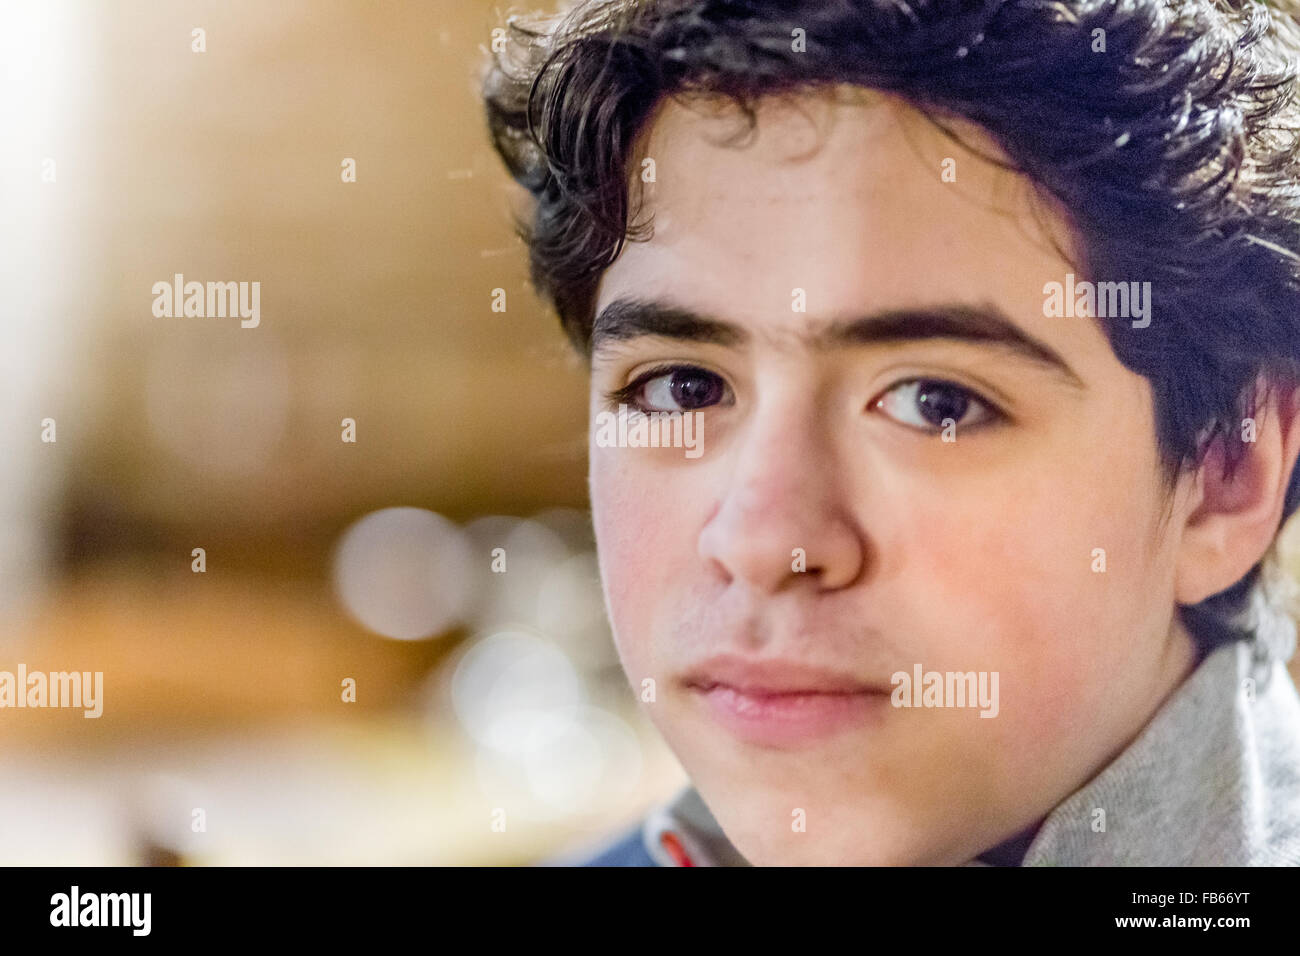 Fermer portrait of Caucasian boy avec regard rassurant dans une ambiance chaleureuse et lumineuse Banque D'Images